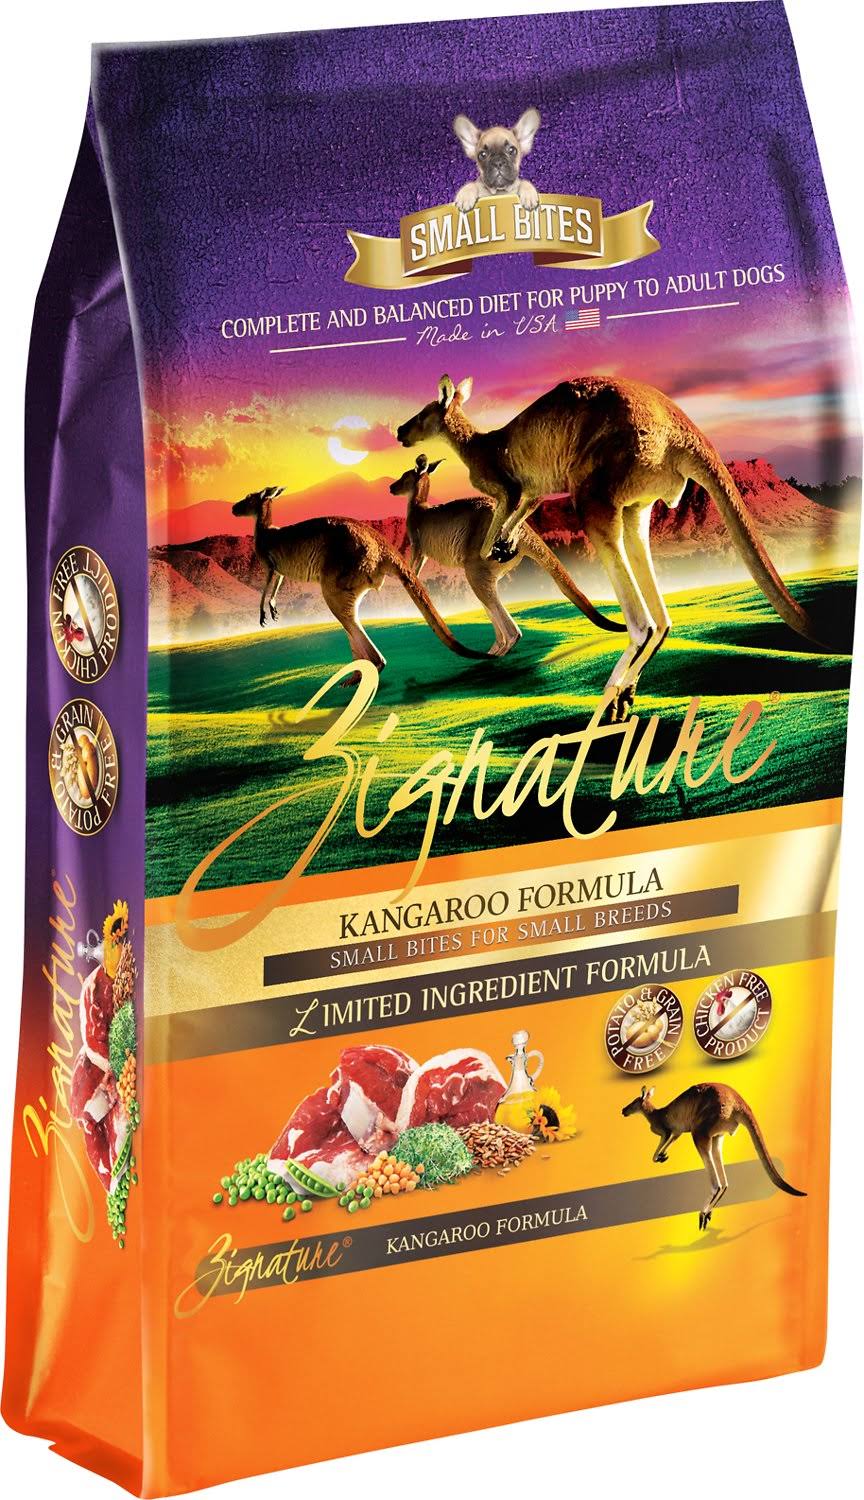 Zignature Kangaroo Formula Small Bites Dry Dog Food - 12.5 lbs